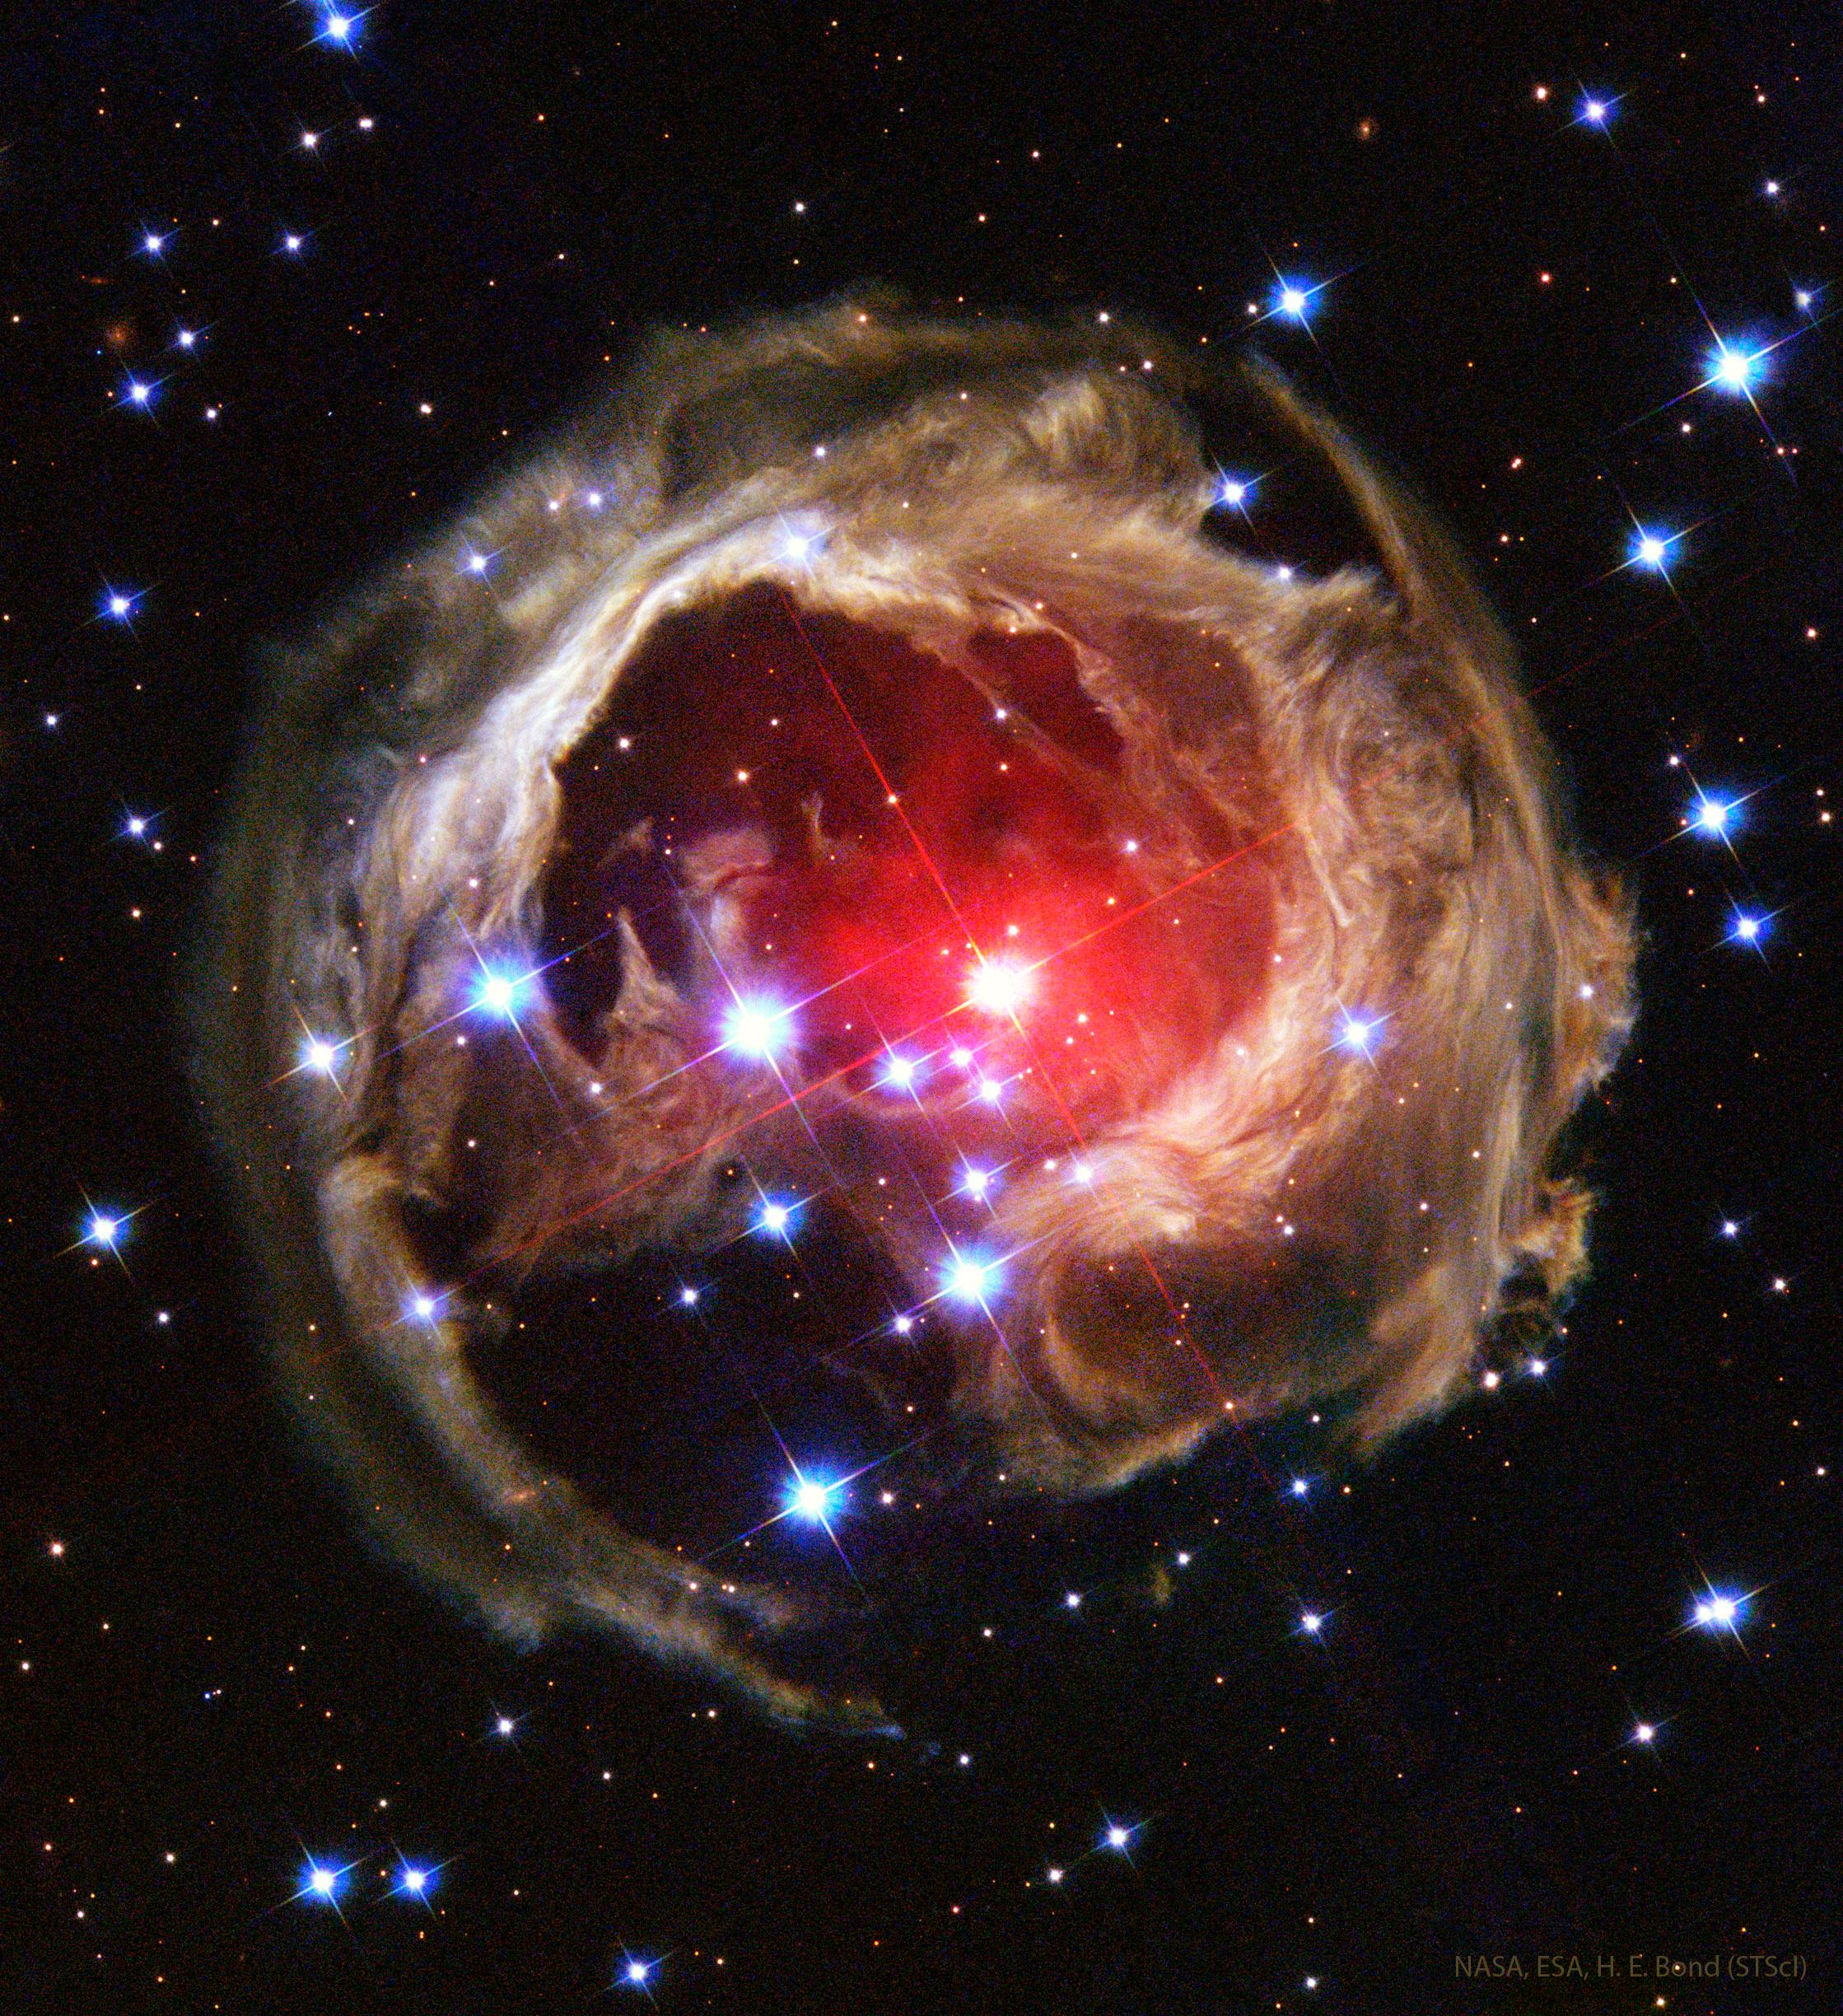 بُنية متوسّعة تظهر بلون محمر في الداخل وما يشبه طبقات من الألياف البنّية تحيط بها بينما تنتشر نجوم مدبّبة وأخرى صغيرة عبر الصورة